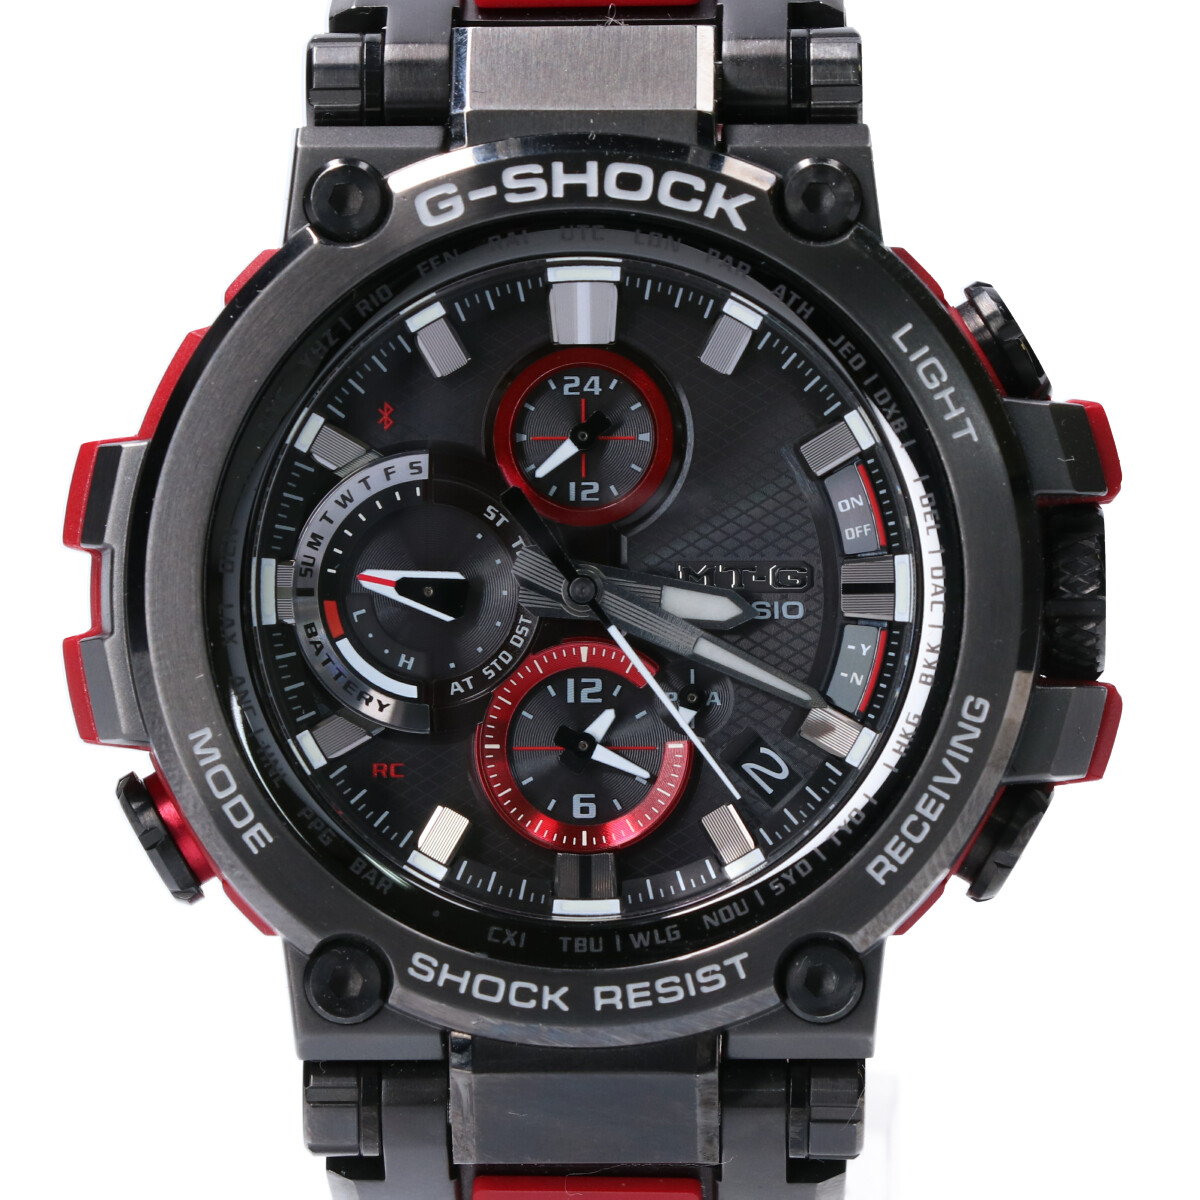 G-SHOCKのMTG-B1000B-1A4JF MT-G Bluetooth®搭載 電波ソーラーメタルベゼル 腕時計の買取実績です。